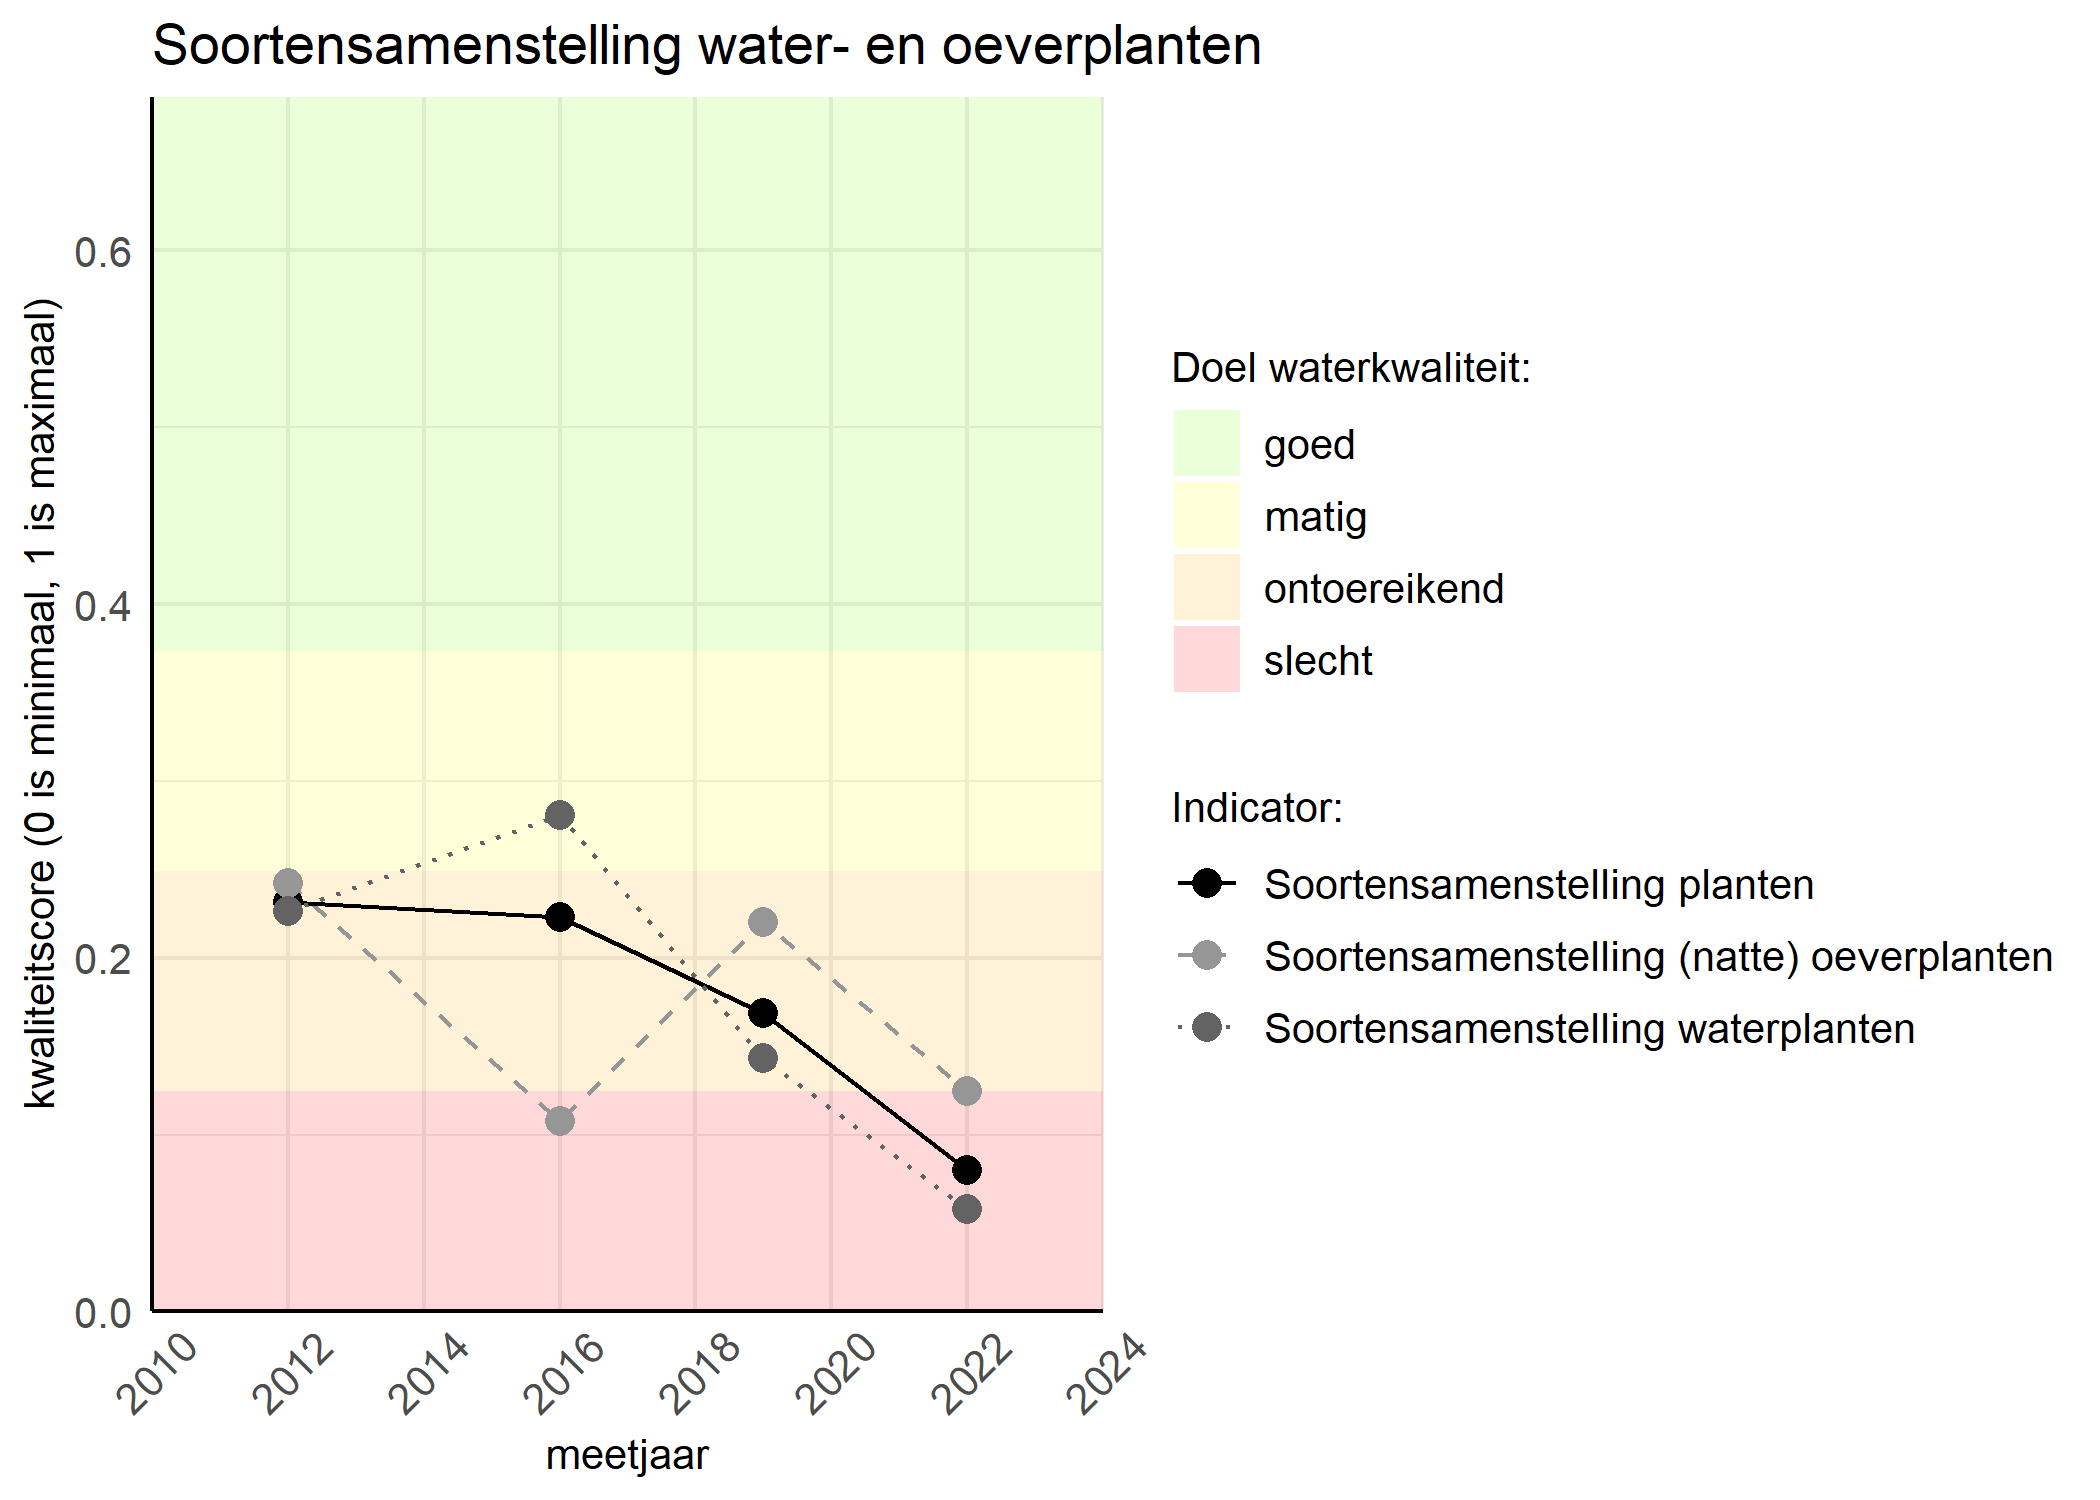 Figure 4: Kwaliteitsscore van de soortensamenstelling waterplanten vergeleken met doelen. De achtergrondkleuren in het figuur zijn het kwaliteitsoordeel en de stippen zijn de kwaliteitscores per jaar. Als de lijn over de groene achtergrondkleur valt is het doel gehaald.